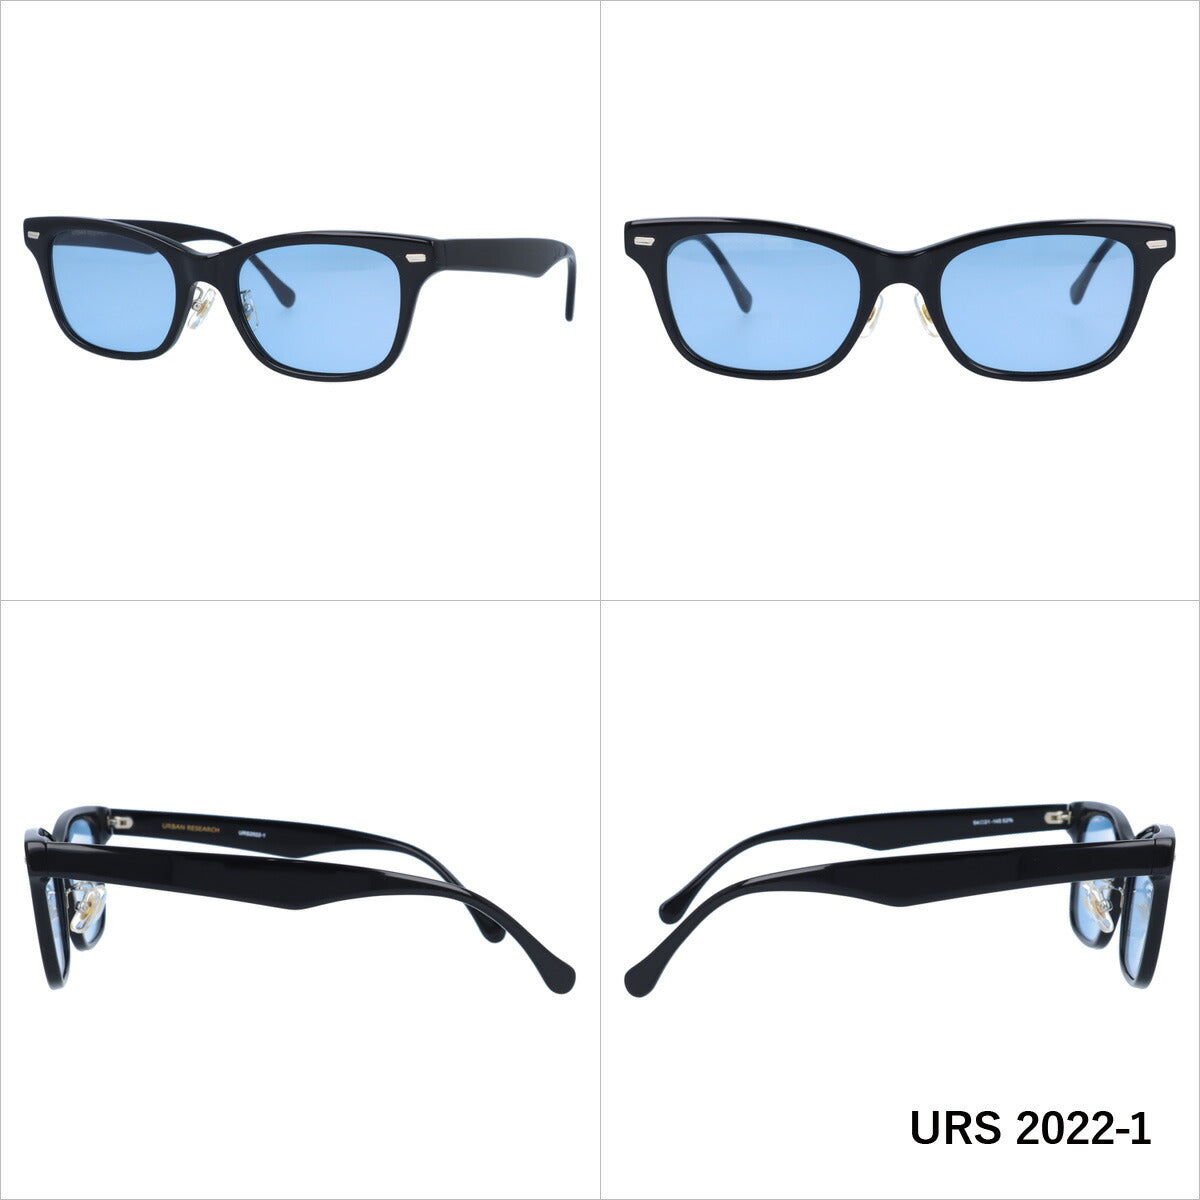 おしゃれ サングラス URBAN RESEARCH THE GIFT LABEL アーバンリサーチ ザ ギフトレーベル URS 2022 全3色 54サイズ アジアンフィット ウェリントン型 メンズ レディース UVカット 紫外線 対策 ブランド 眼鏡 メガネ アイウェア 人気 おすすめ